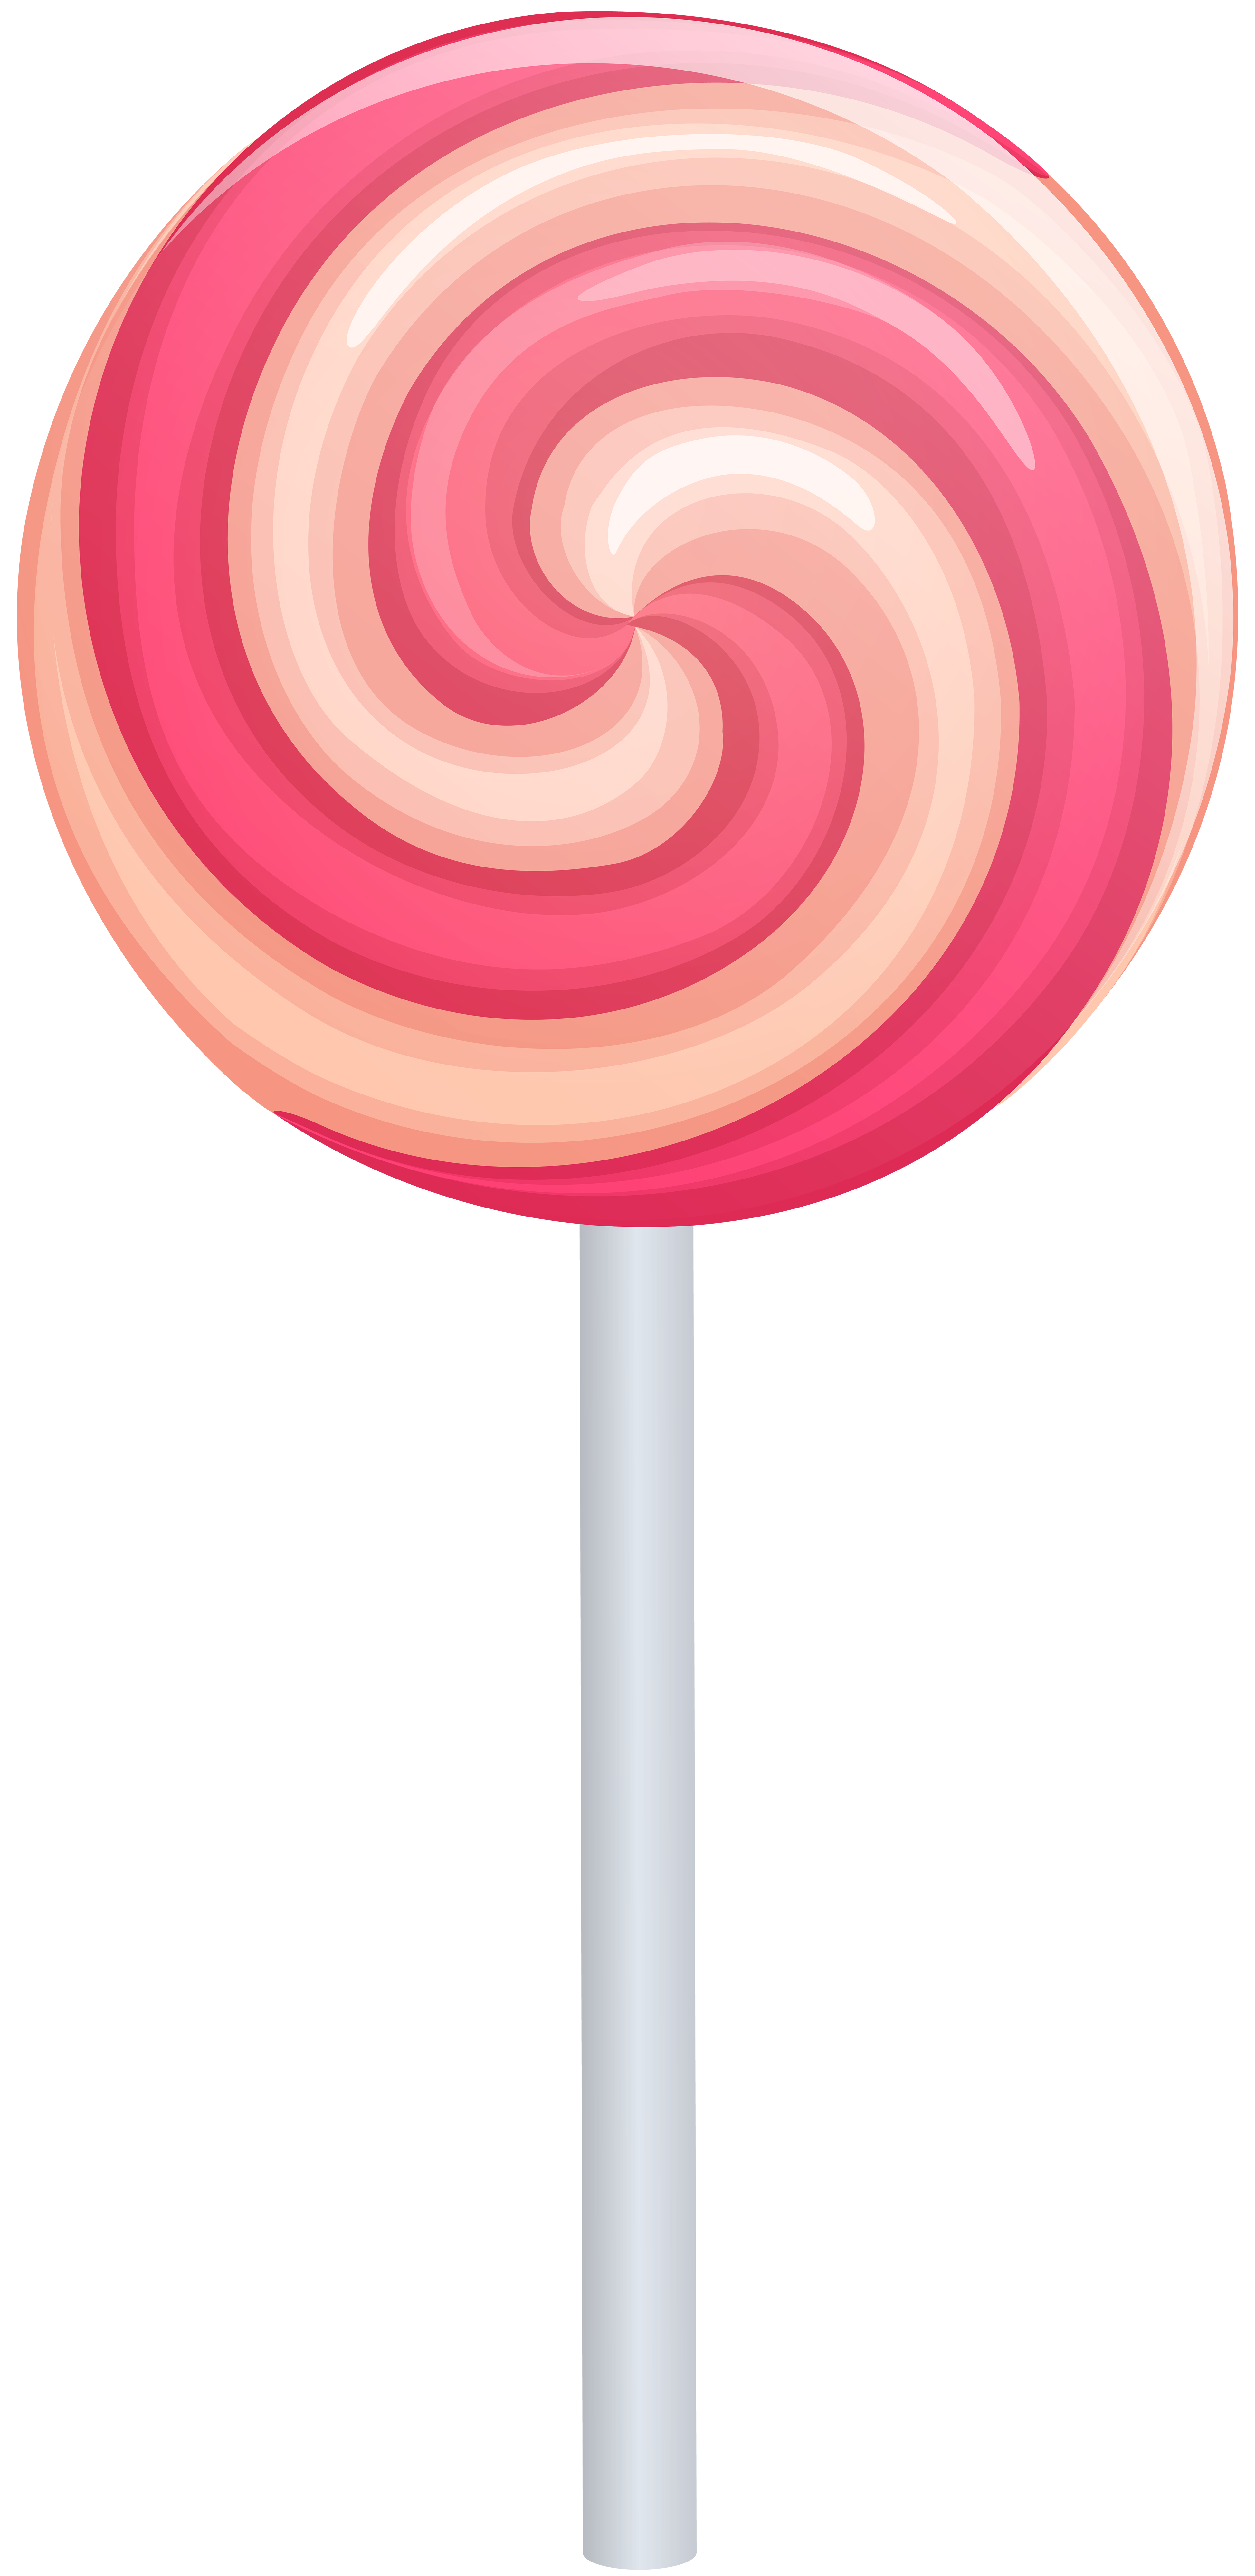 Lollipop clip art images free clipart image clipartix